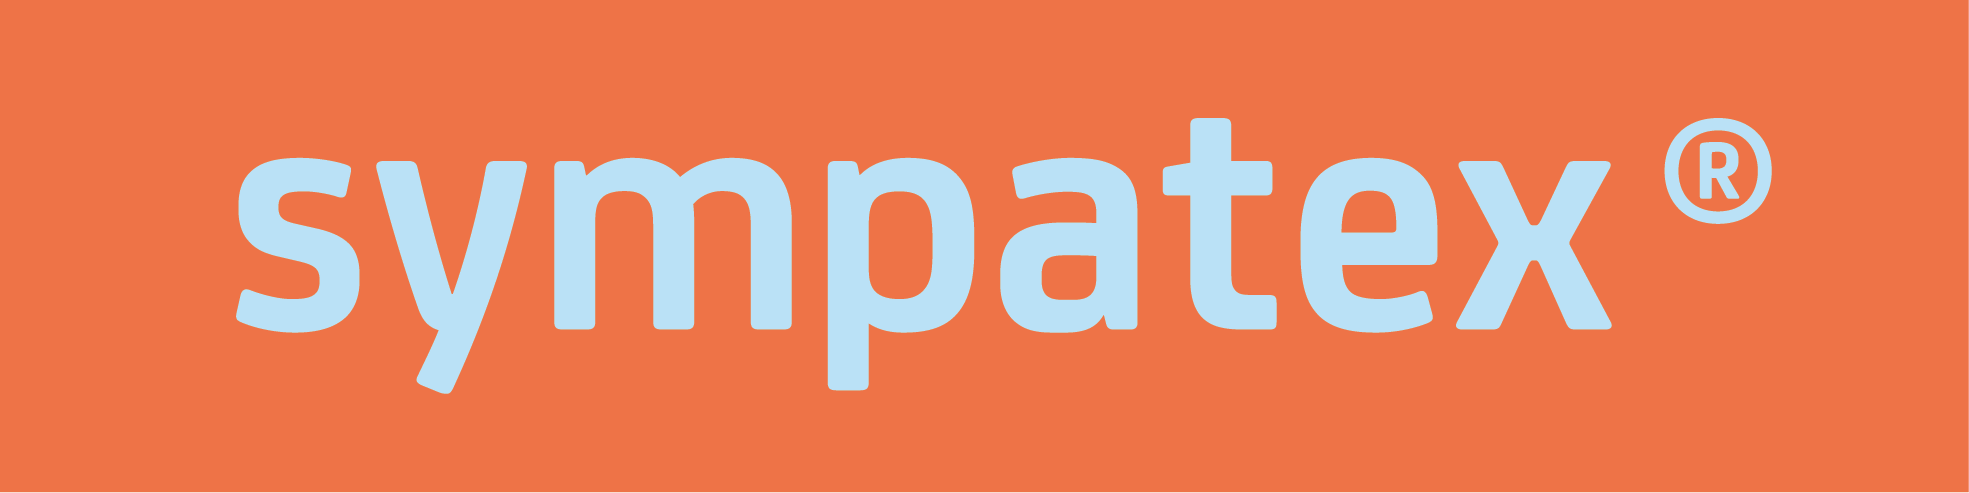 Sympatex_Logo_4c_Red-Orange